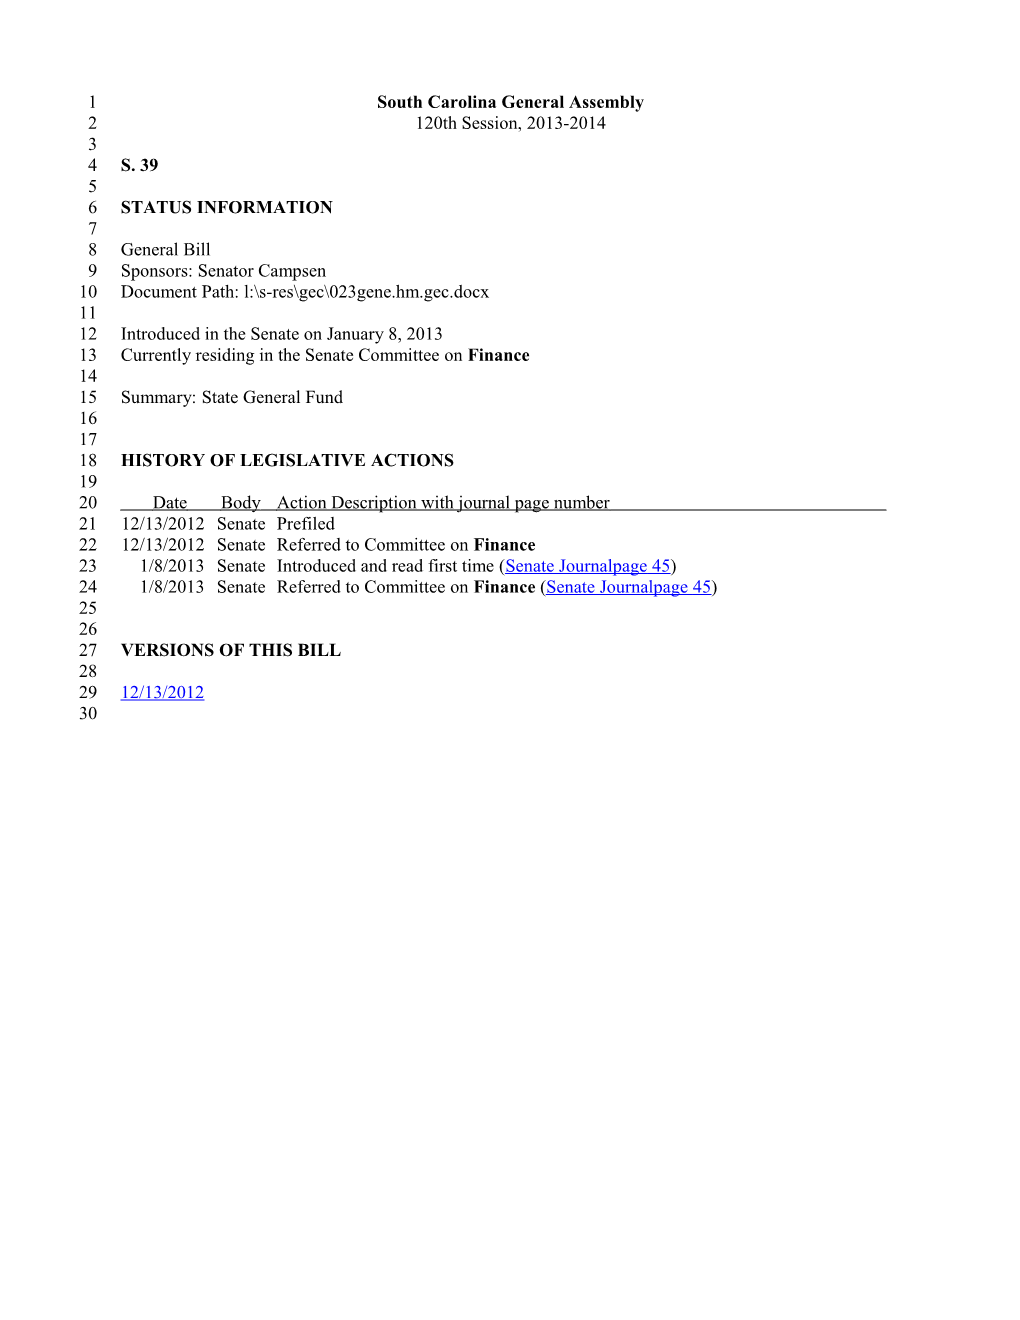 2013-2014 Bill 39: State General Fund - South Carolina Legislature Online